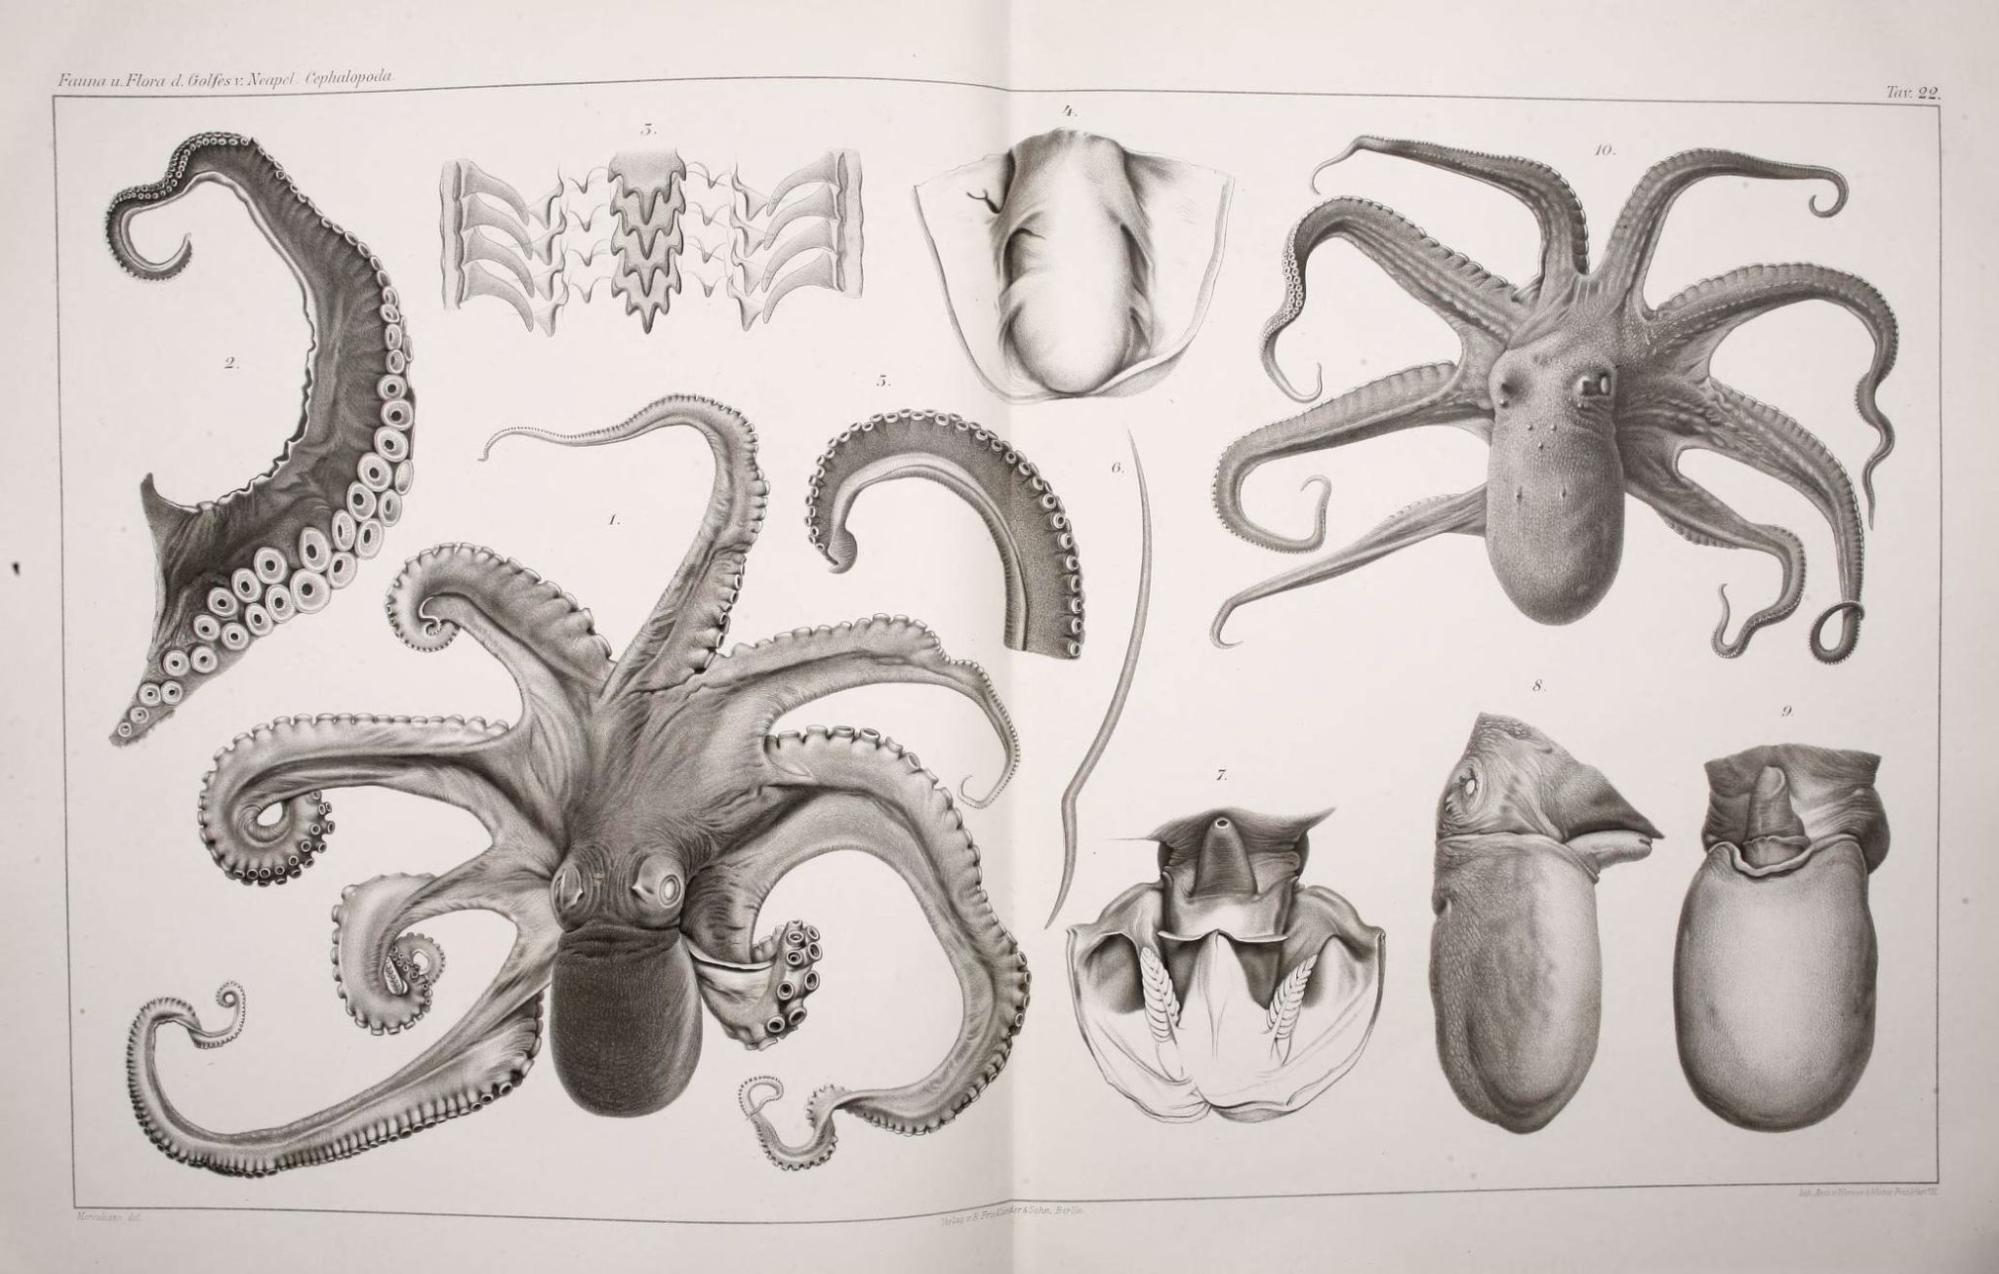 Jatta, G. J. (1896). Cefalopodi viventi nel Golfo di Napoli: Fauna u. Flora des Golfes von Neapel, 23, 224.